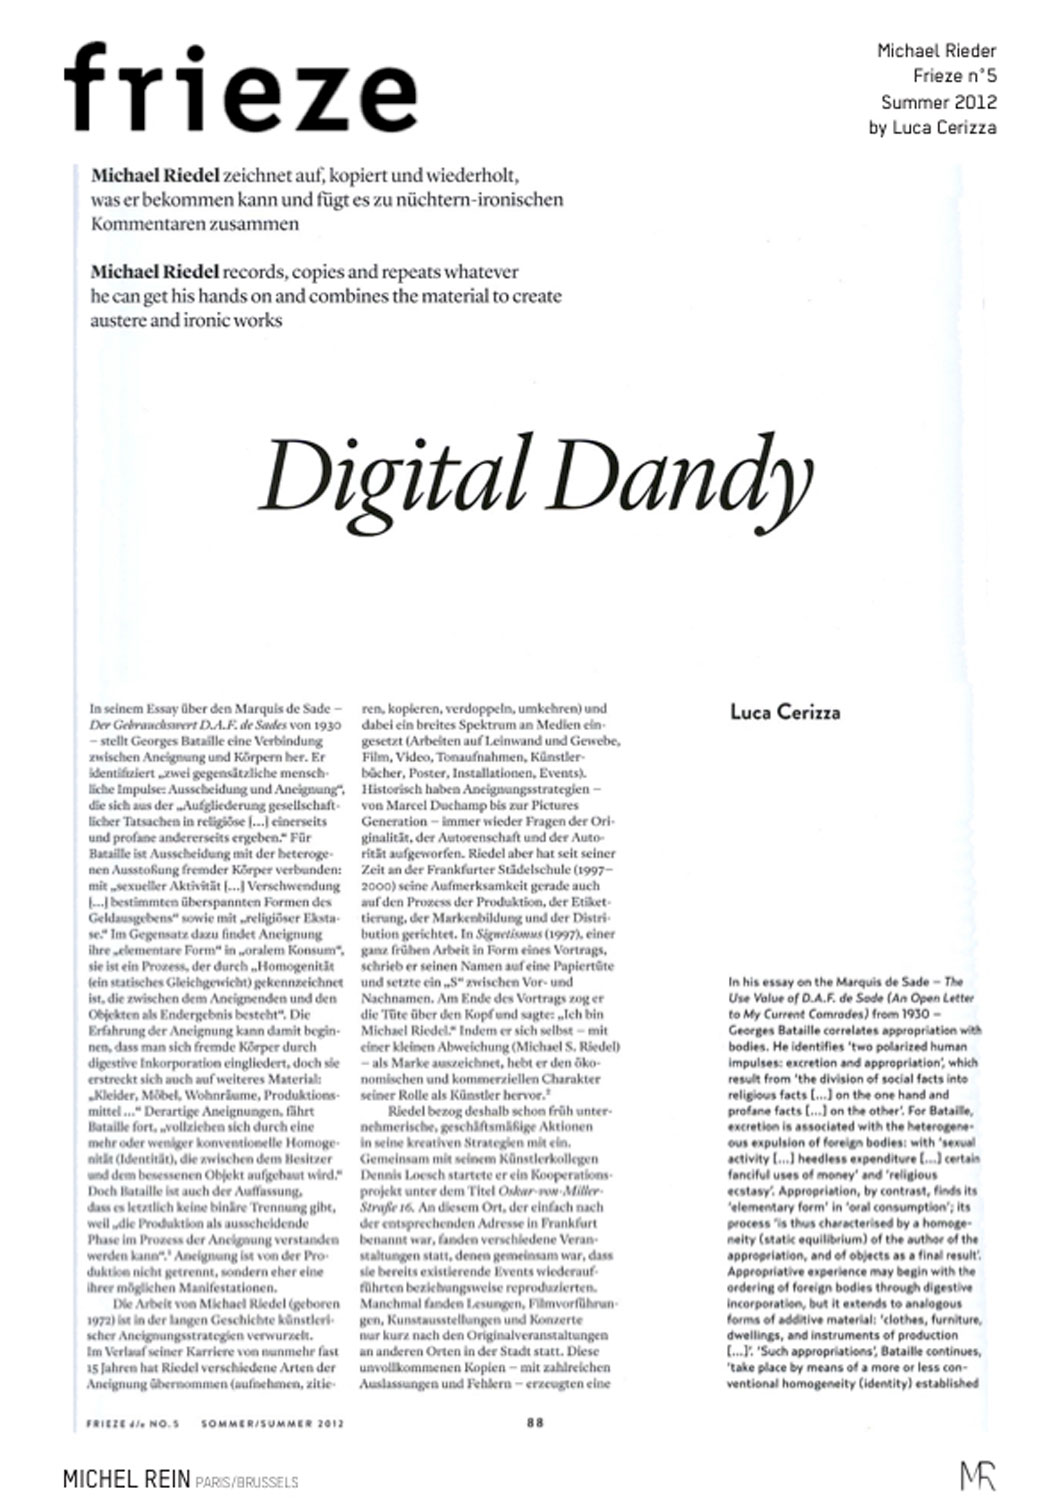 Digital Dandy - Frieze